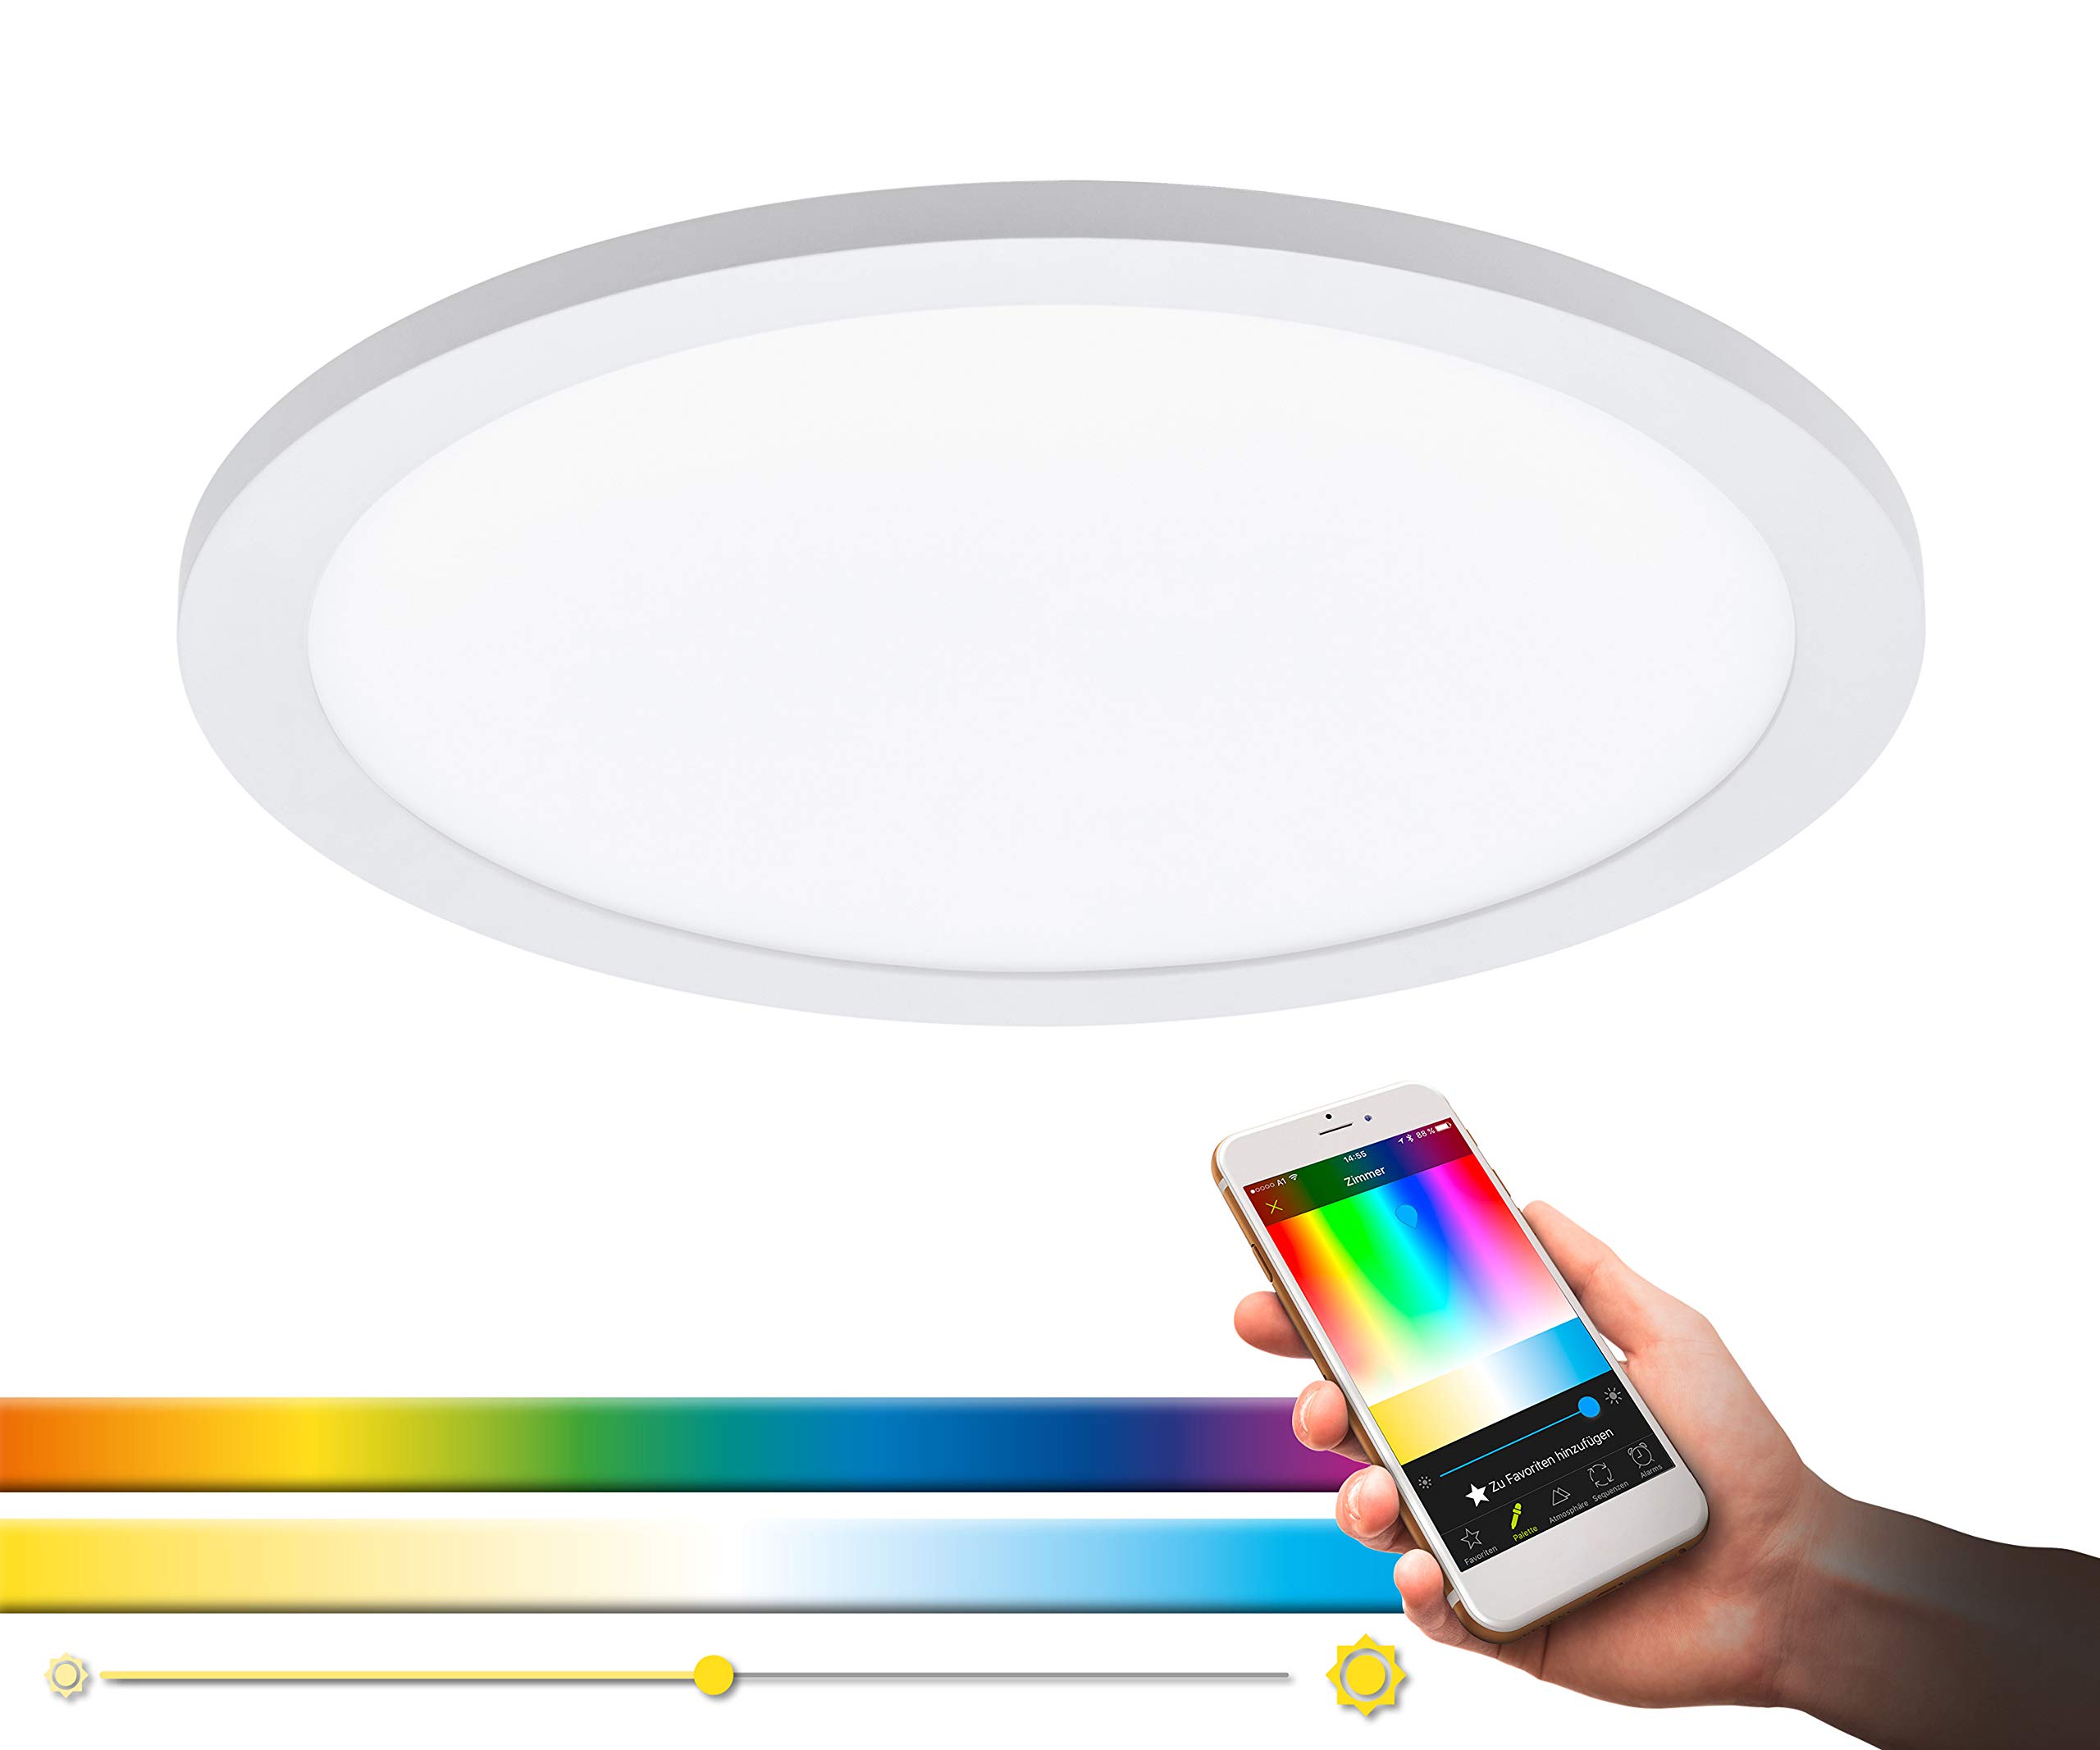 EGLO connect LED Deckenleuchte SARSINA-C Panel, Smart Home Deckenlampe, Material: Aluminium, Kunststoff, Farbe: Weiß, Ø 30 cm, inkl. Fernbedienung, dimmbar, Weißtöne und Farben einstellbar